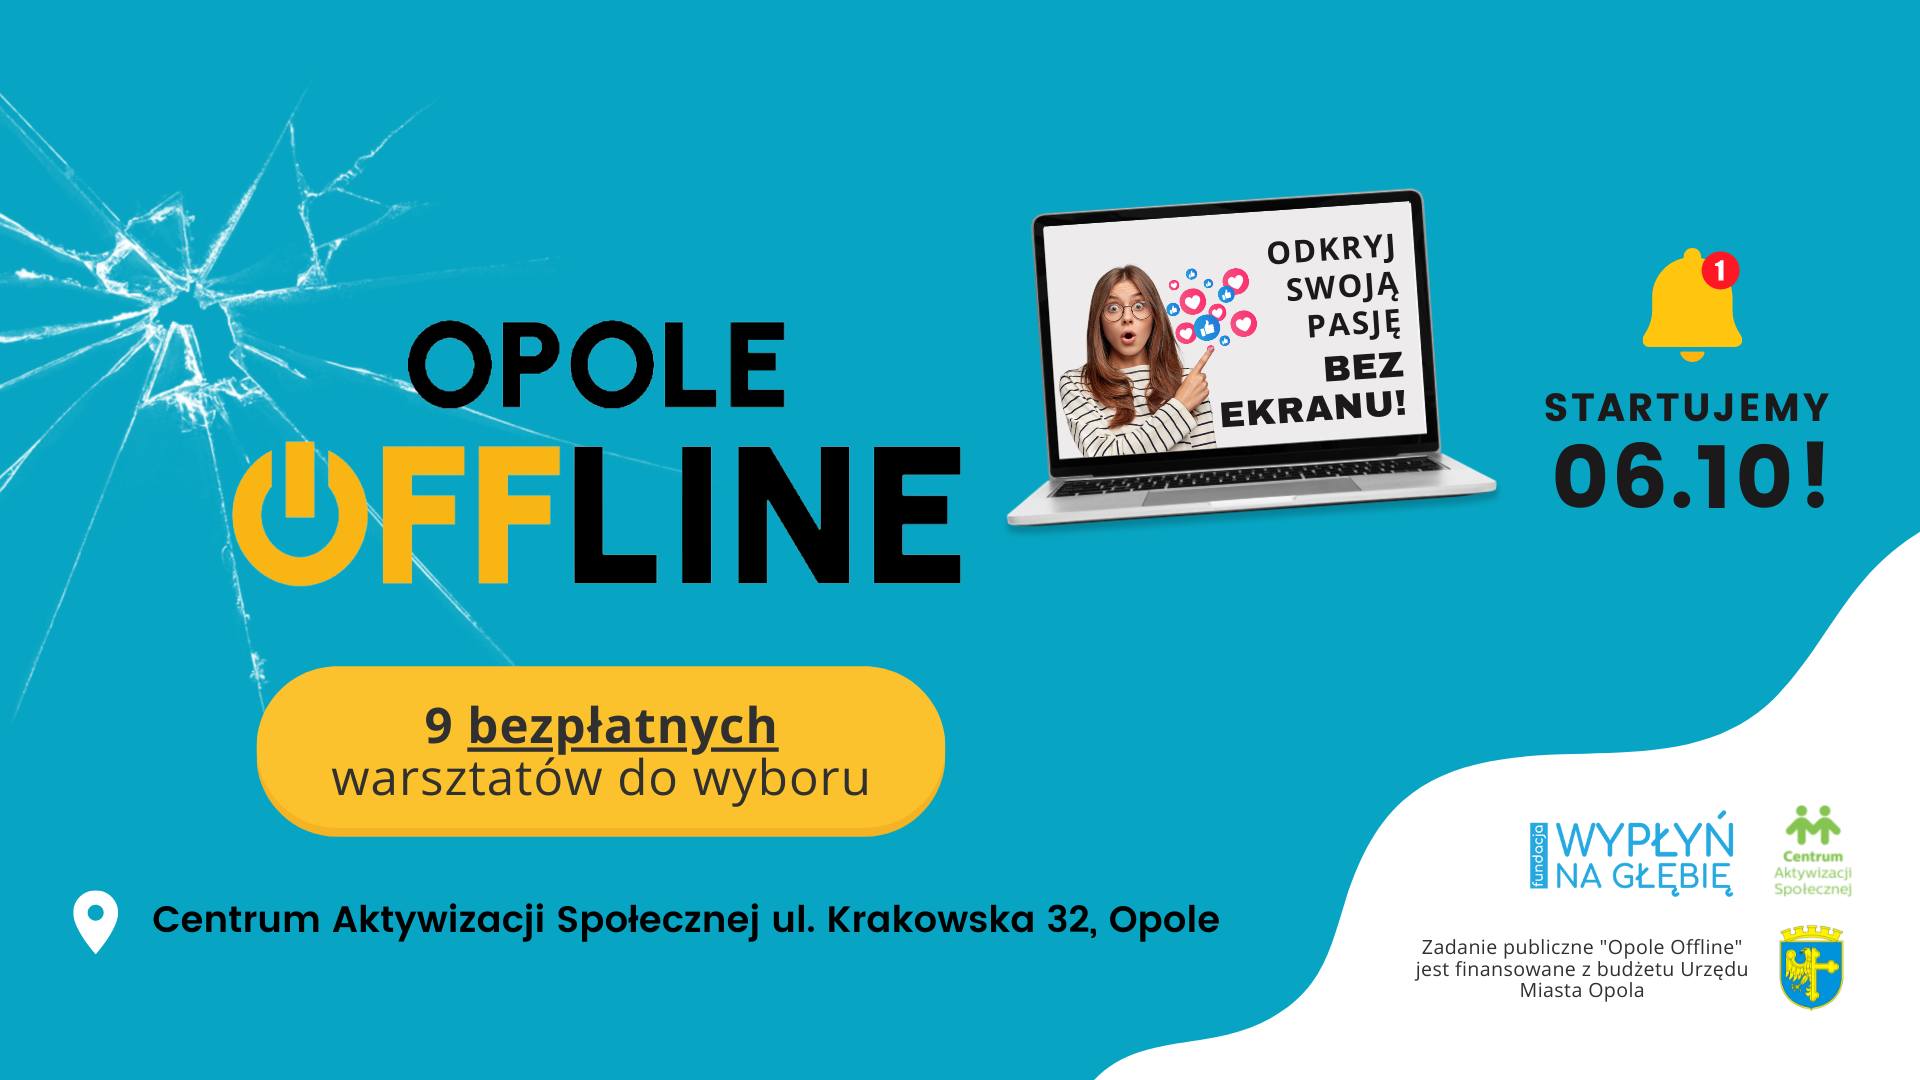 Opole Offline – odkryj swoją pasję już dziś!